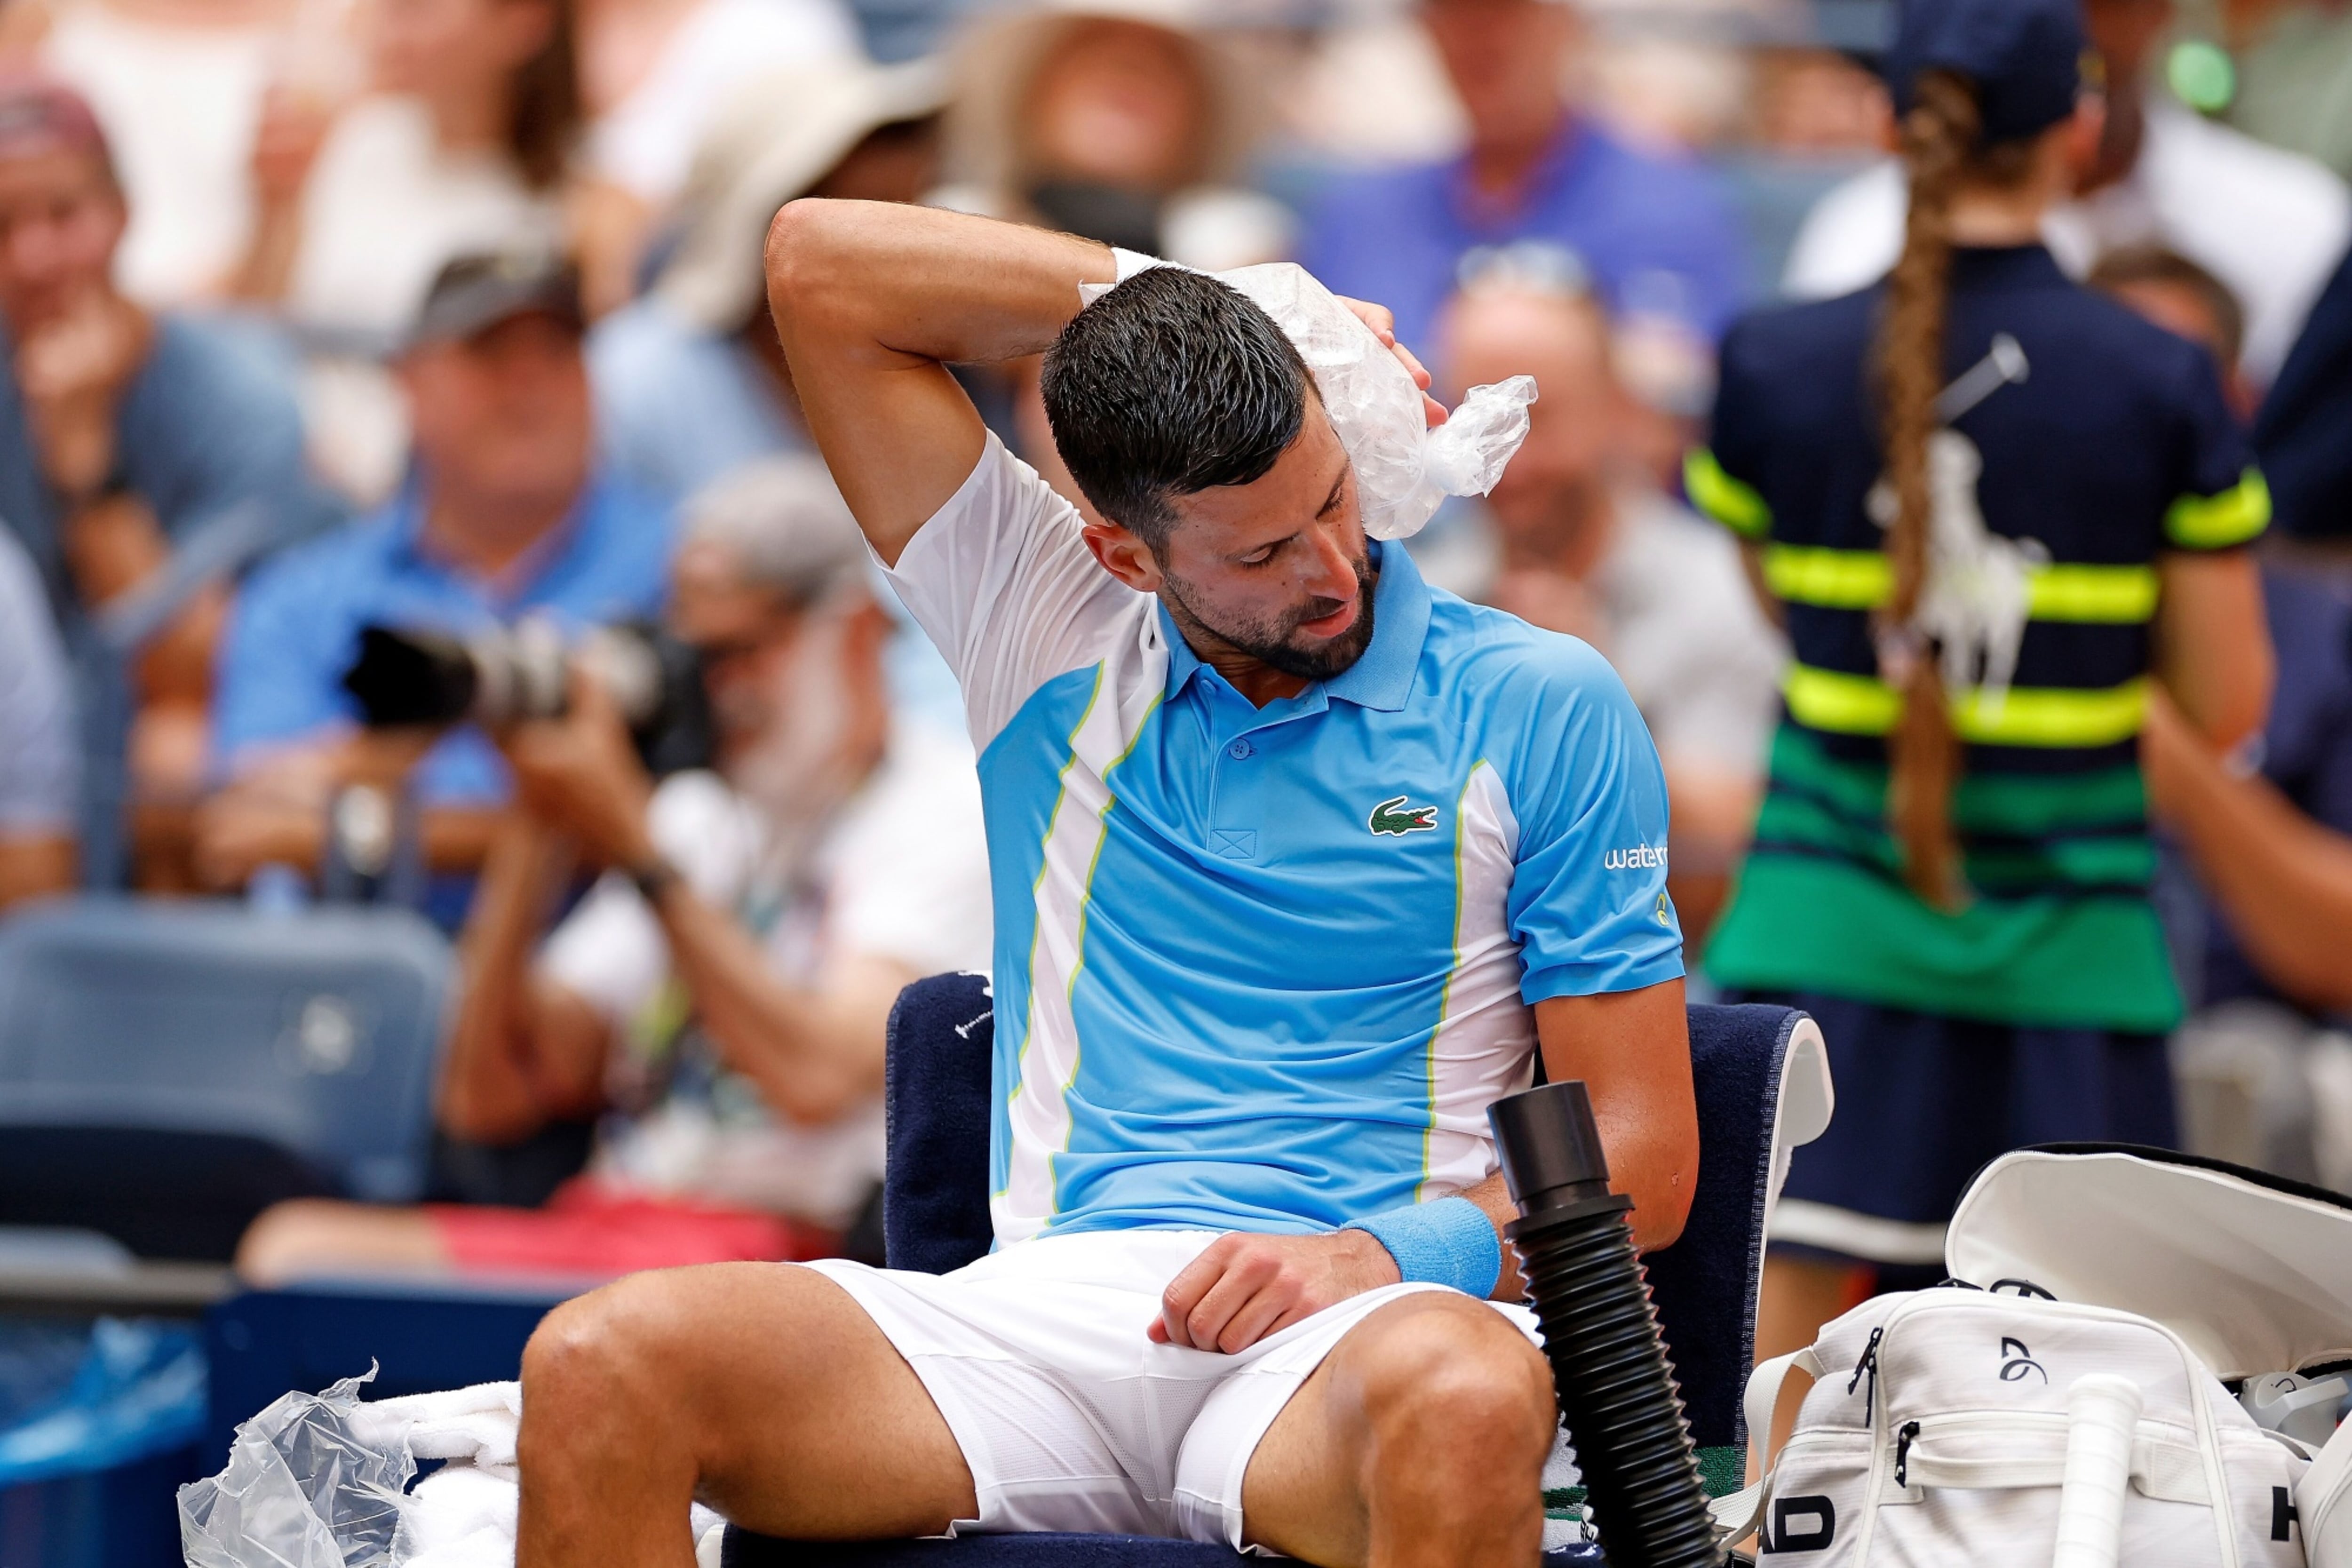 Djokovic se rende a Alcaraz: É o melhor jogador do mundo, tênis